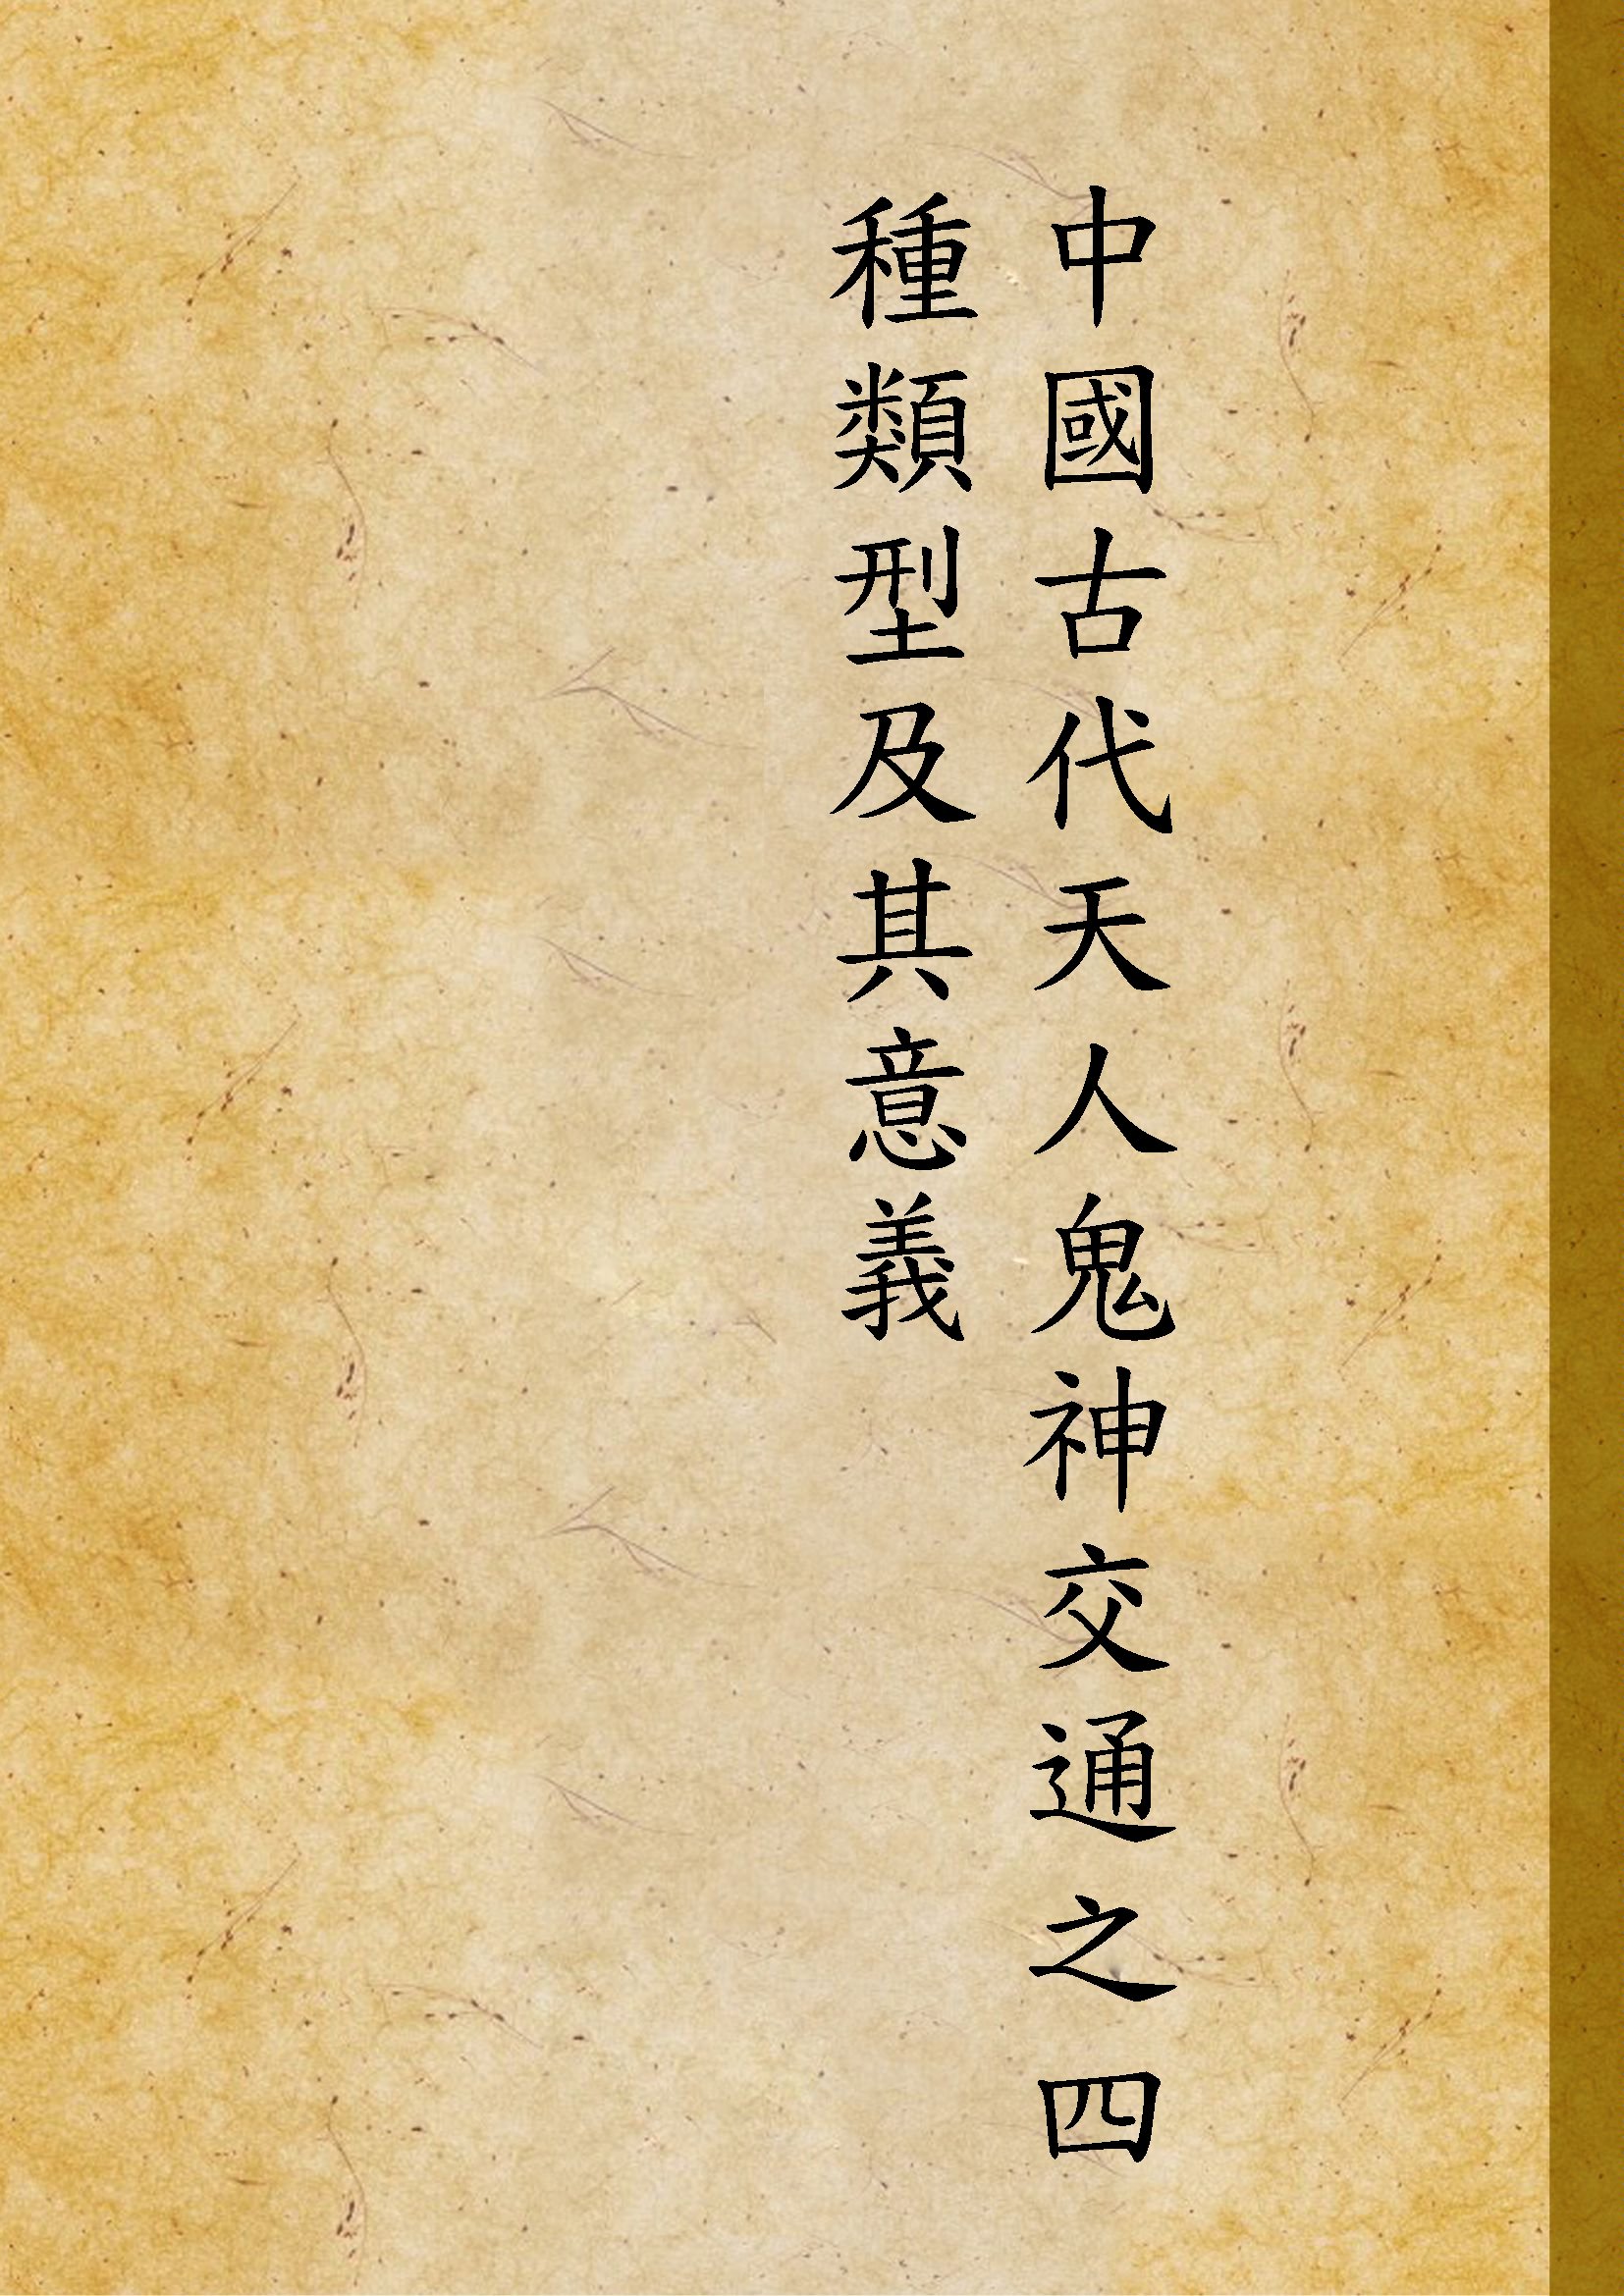 中國古代天人鬼神交通之四種類型及其意義